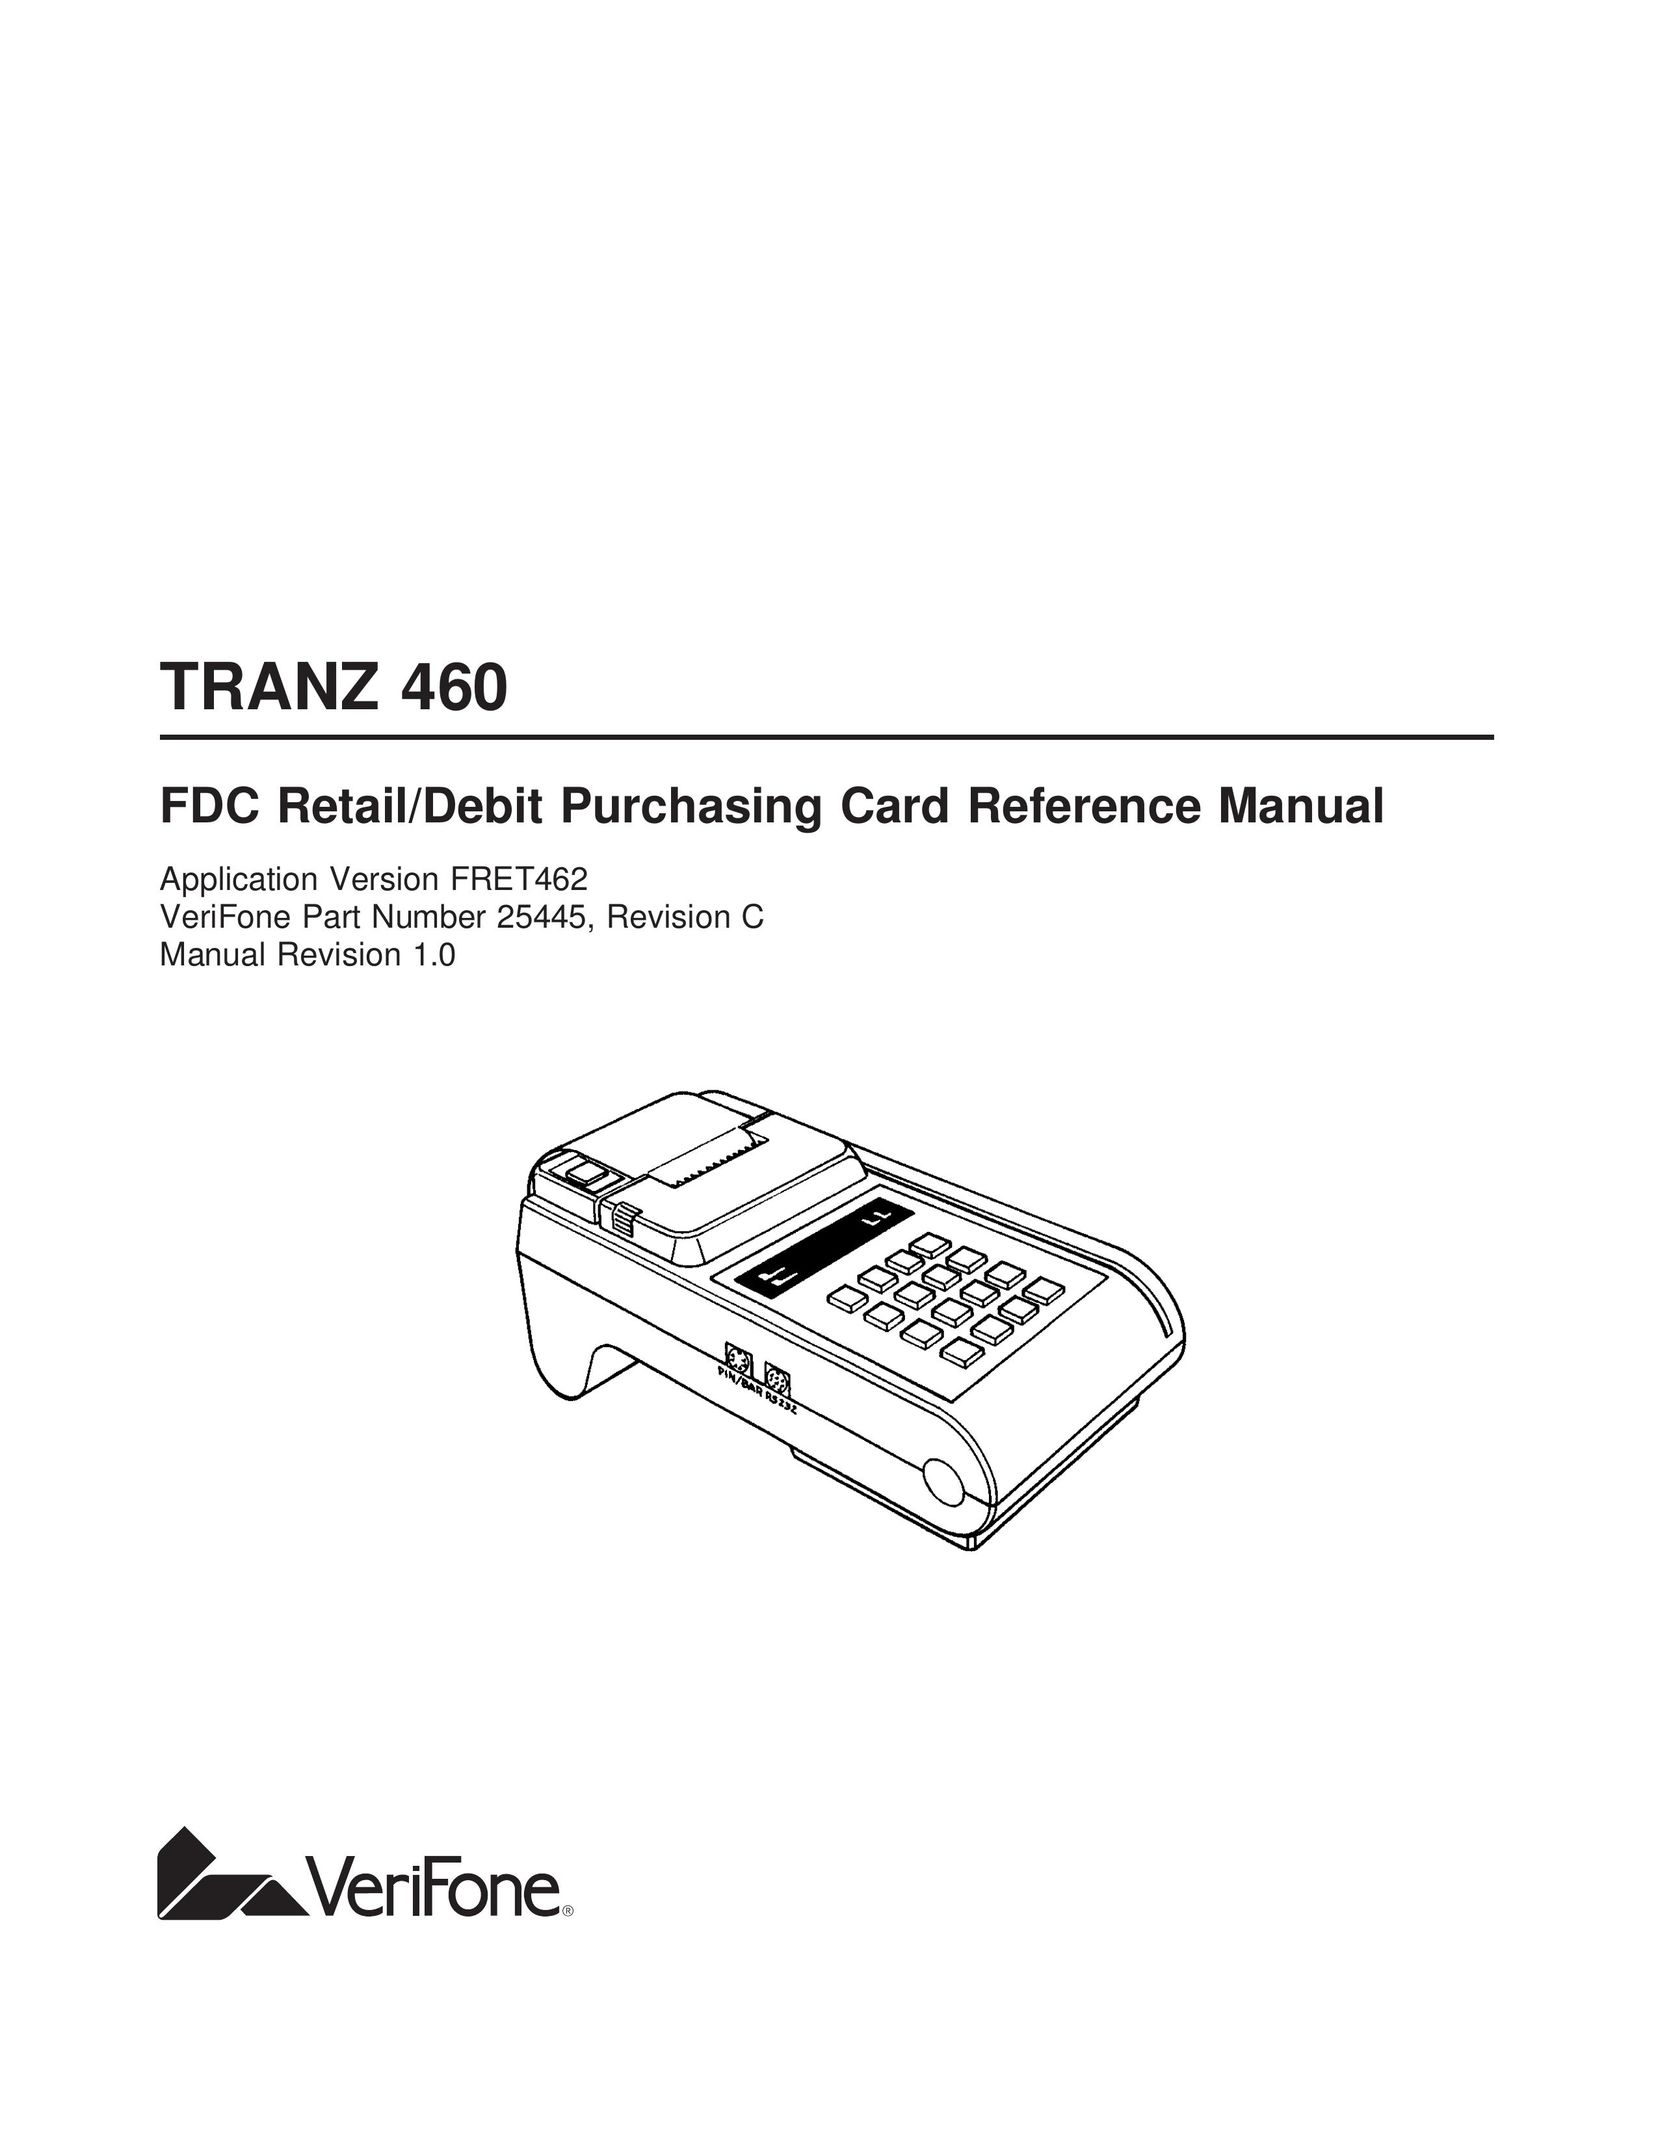 VeriFone TRANZ 460 Credit Card Machine User Manual